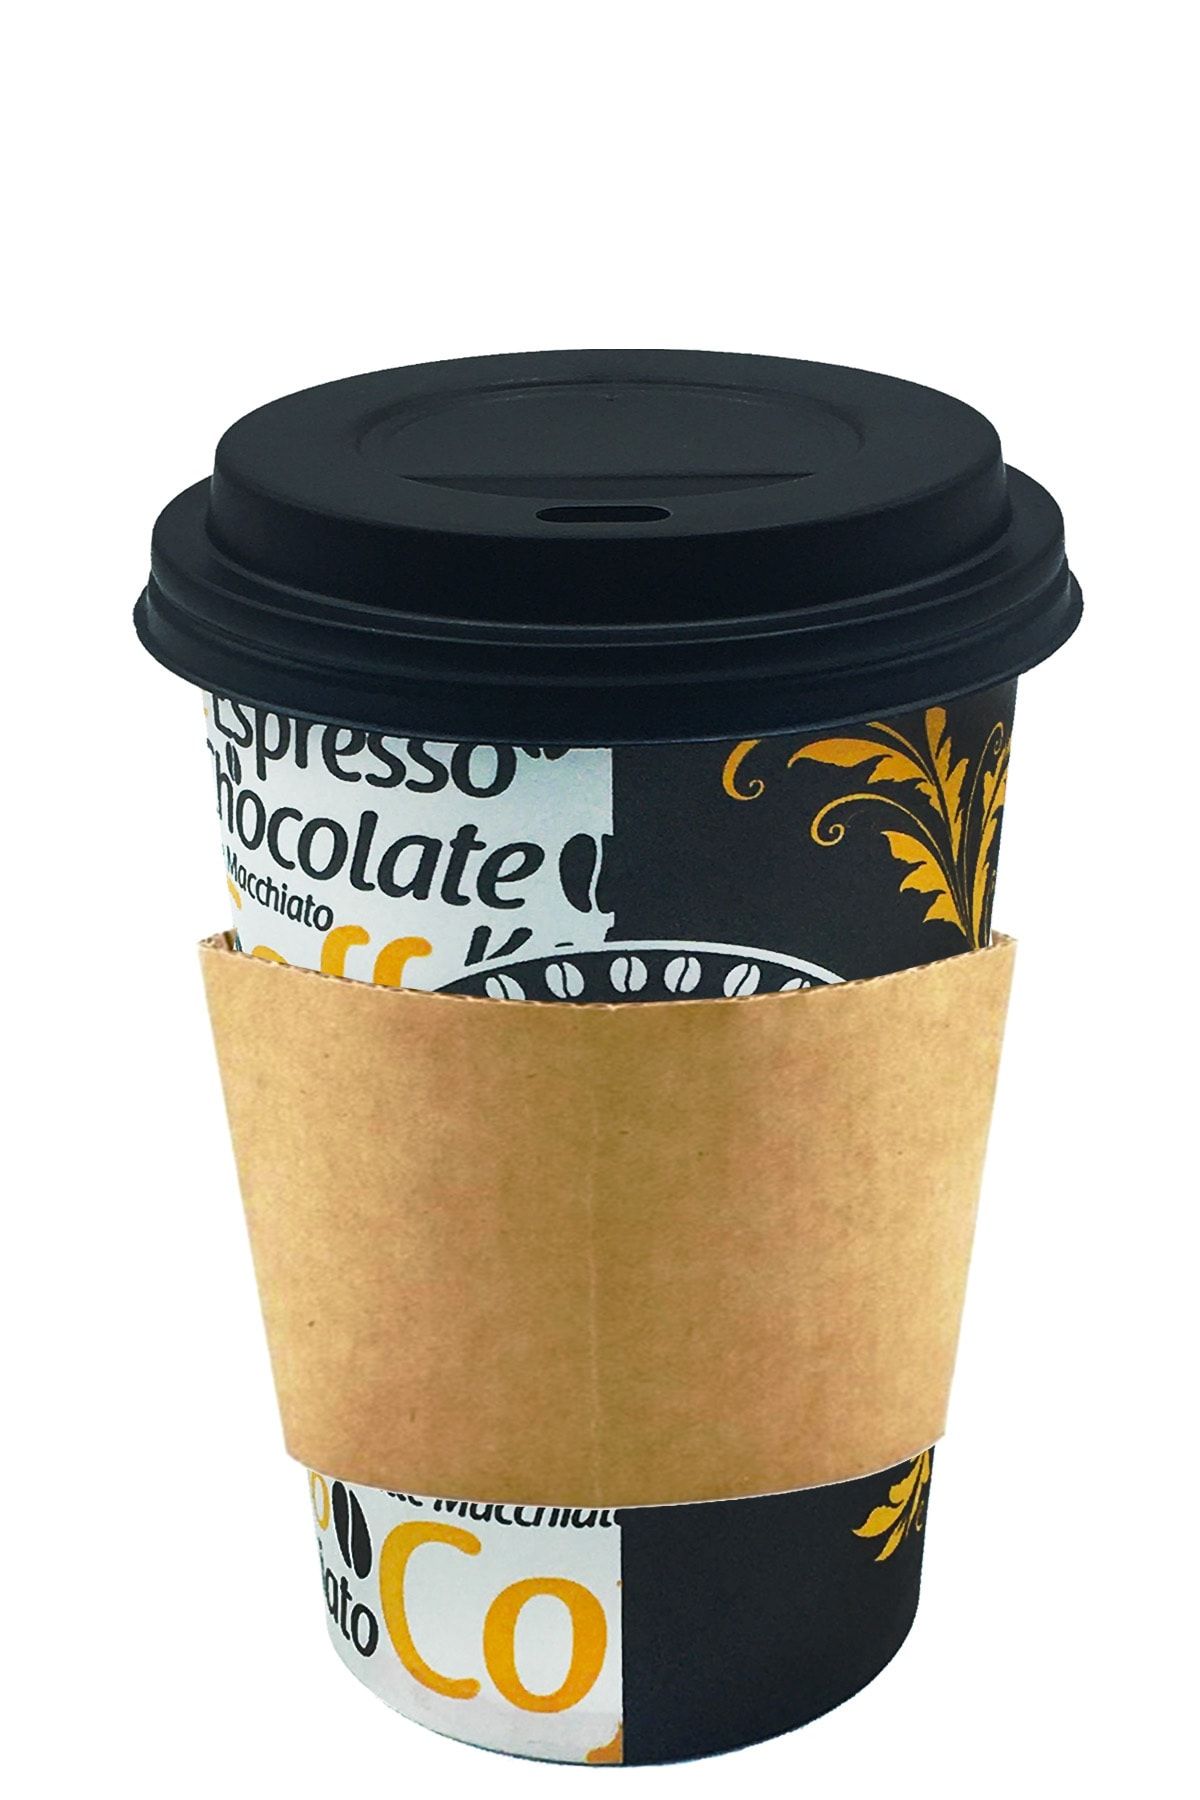 Afra Tedarik 12 Oz Siyah Kapaklı Tutamaçlı Karton Bardak Latte Kahve Kağıt Bardak Sleeve 300 Ml - 100'lü